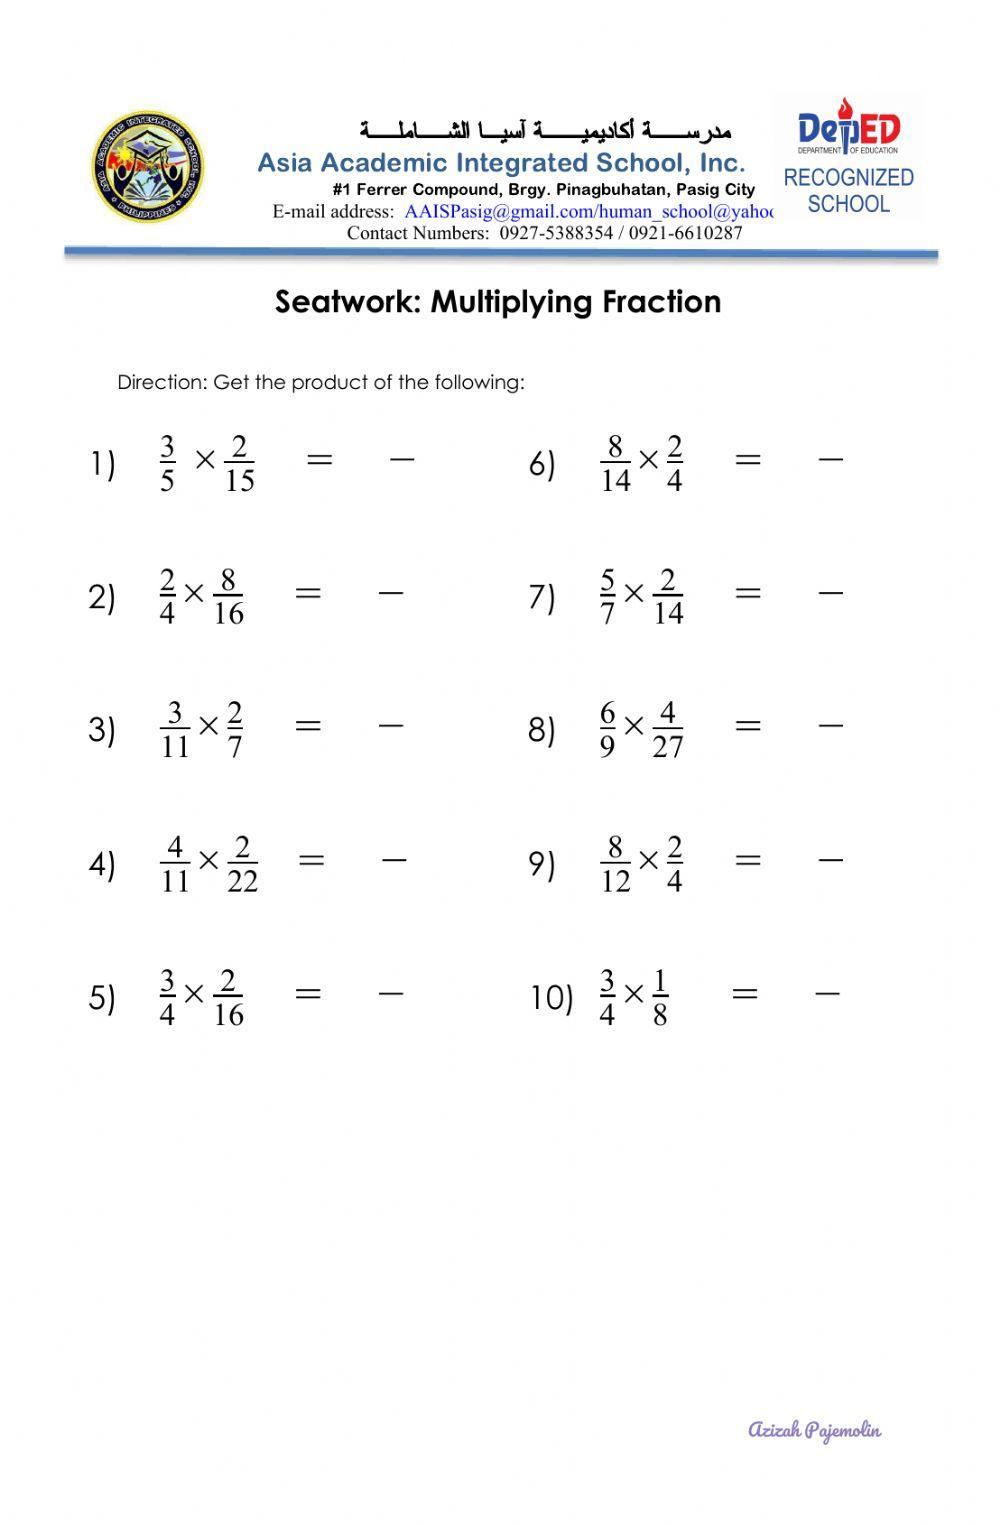 Multiplying Fraction